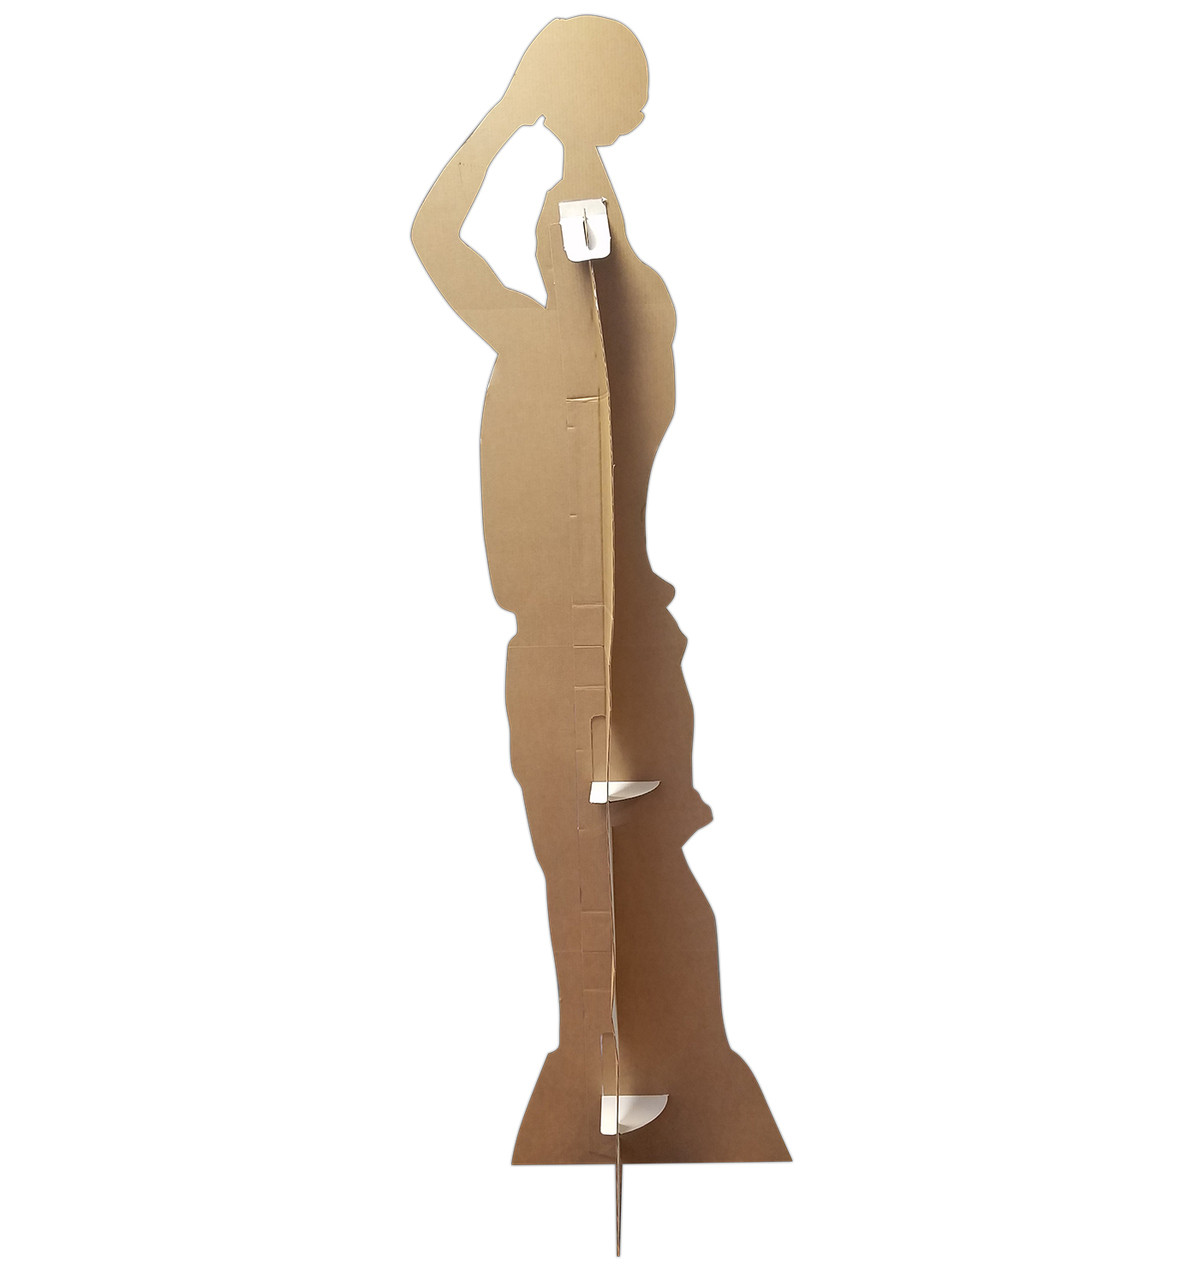 Life-size Basketball Player Shooting Silhouette Cardboard Standup